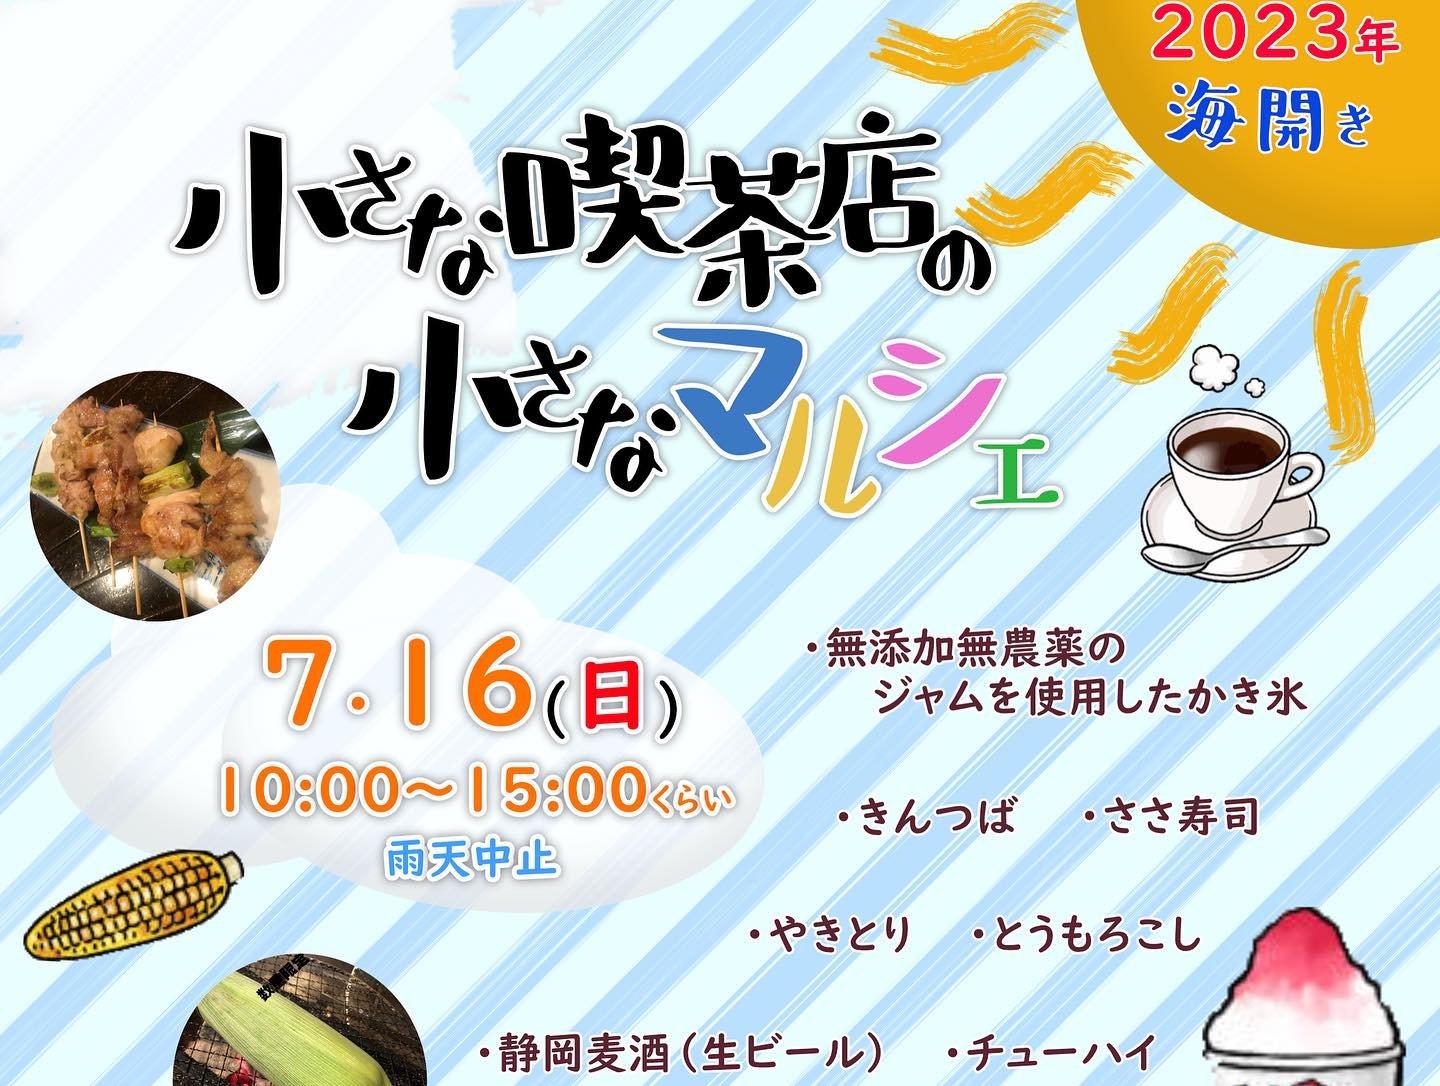 【R荘】 7月16日(日) 小さな喫茶店の小さなマルシェ